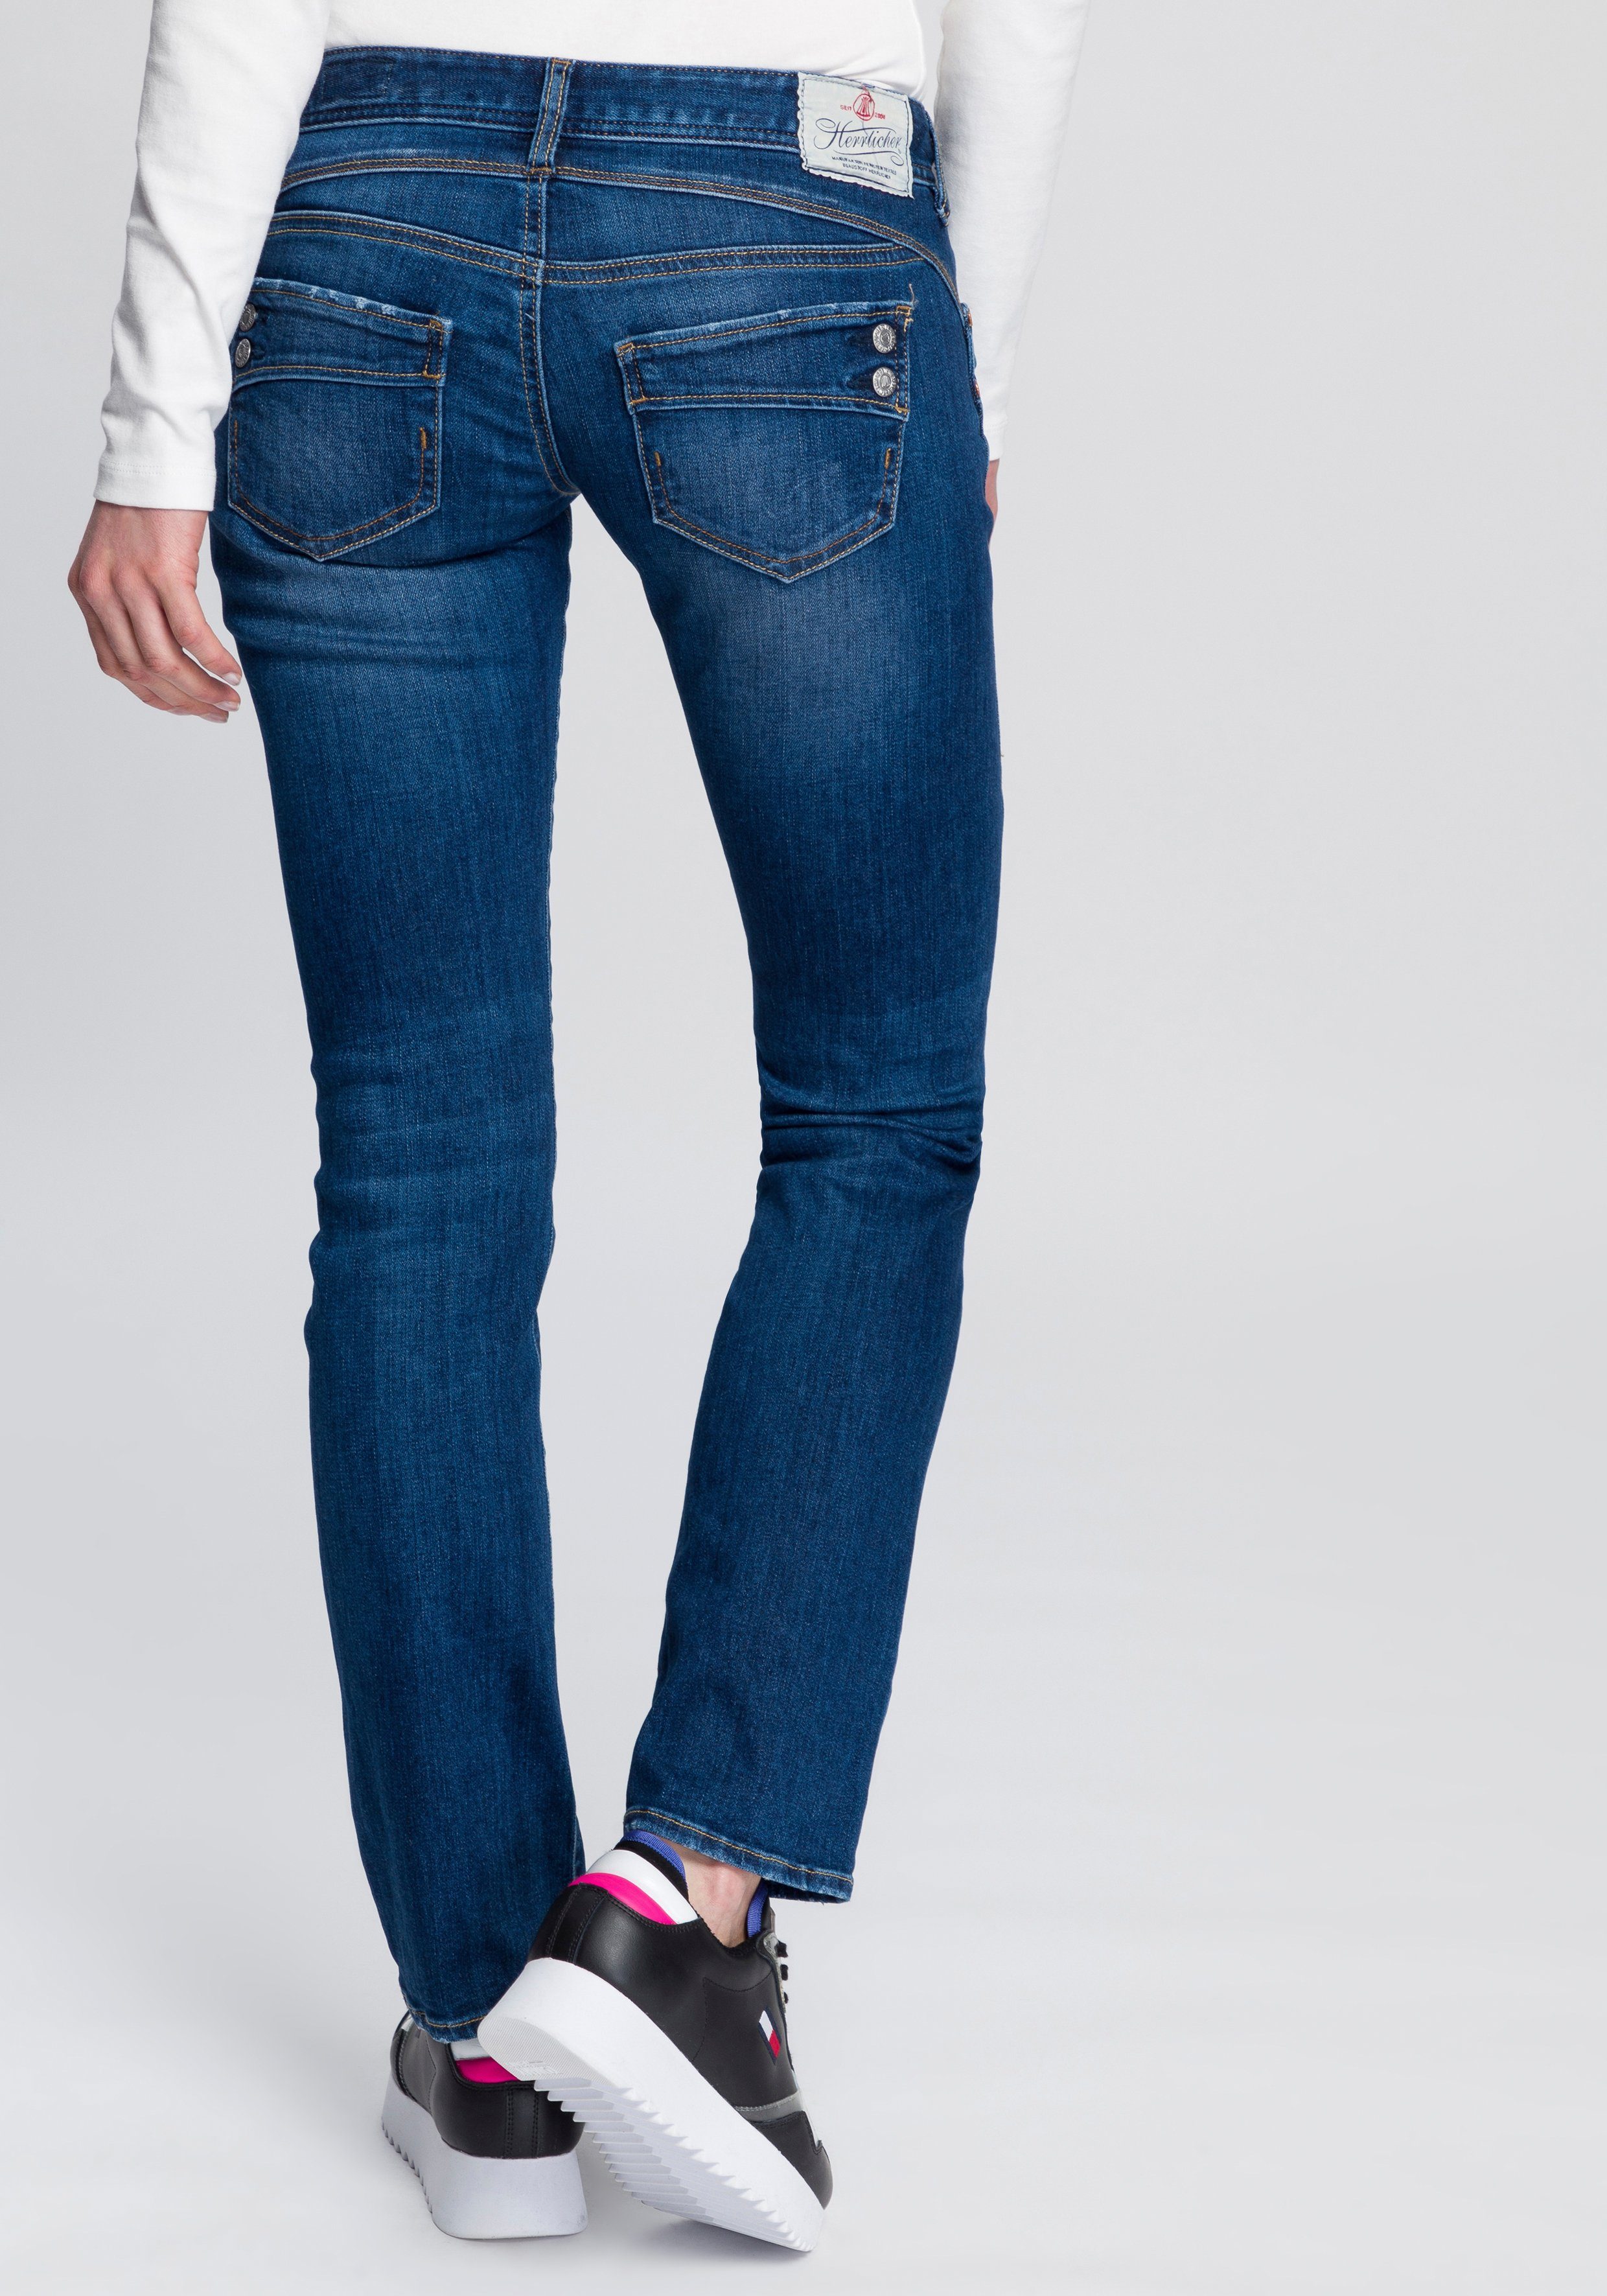 Damen Straight Jeans online kaufen » Gerade Jeans | OTTO